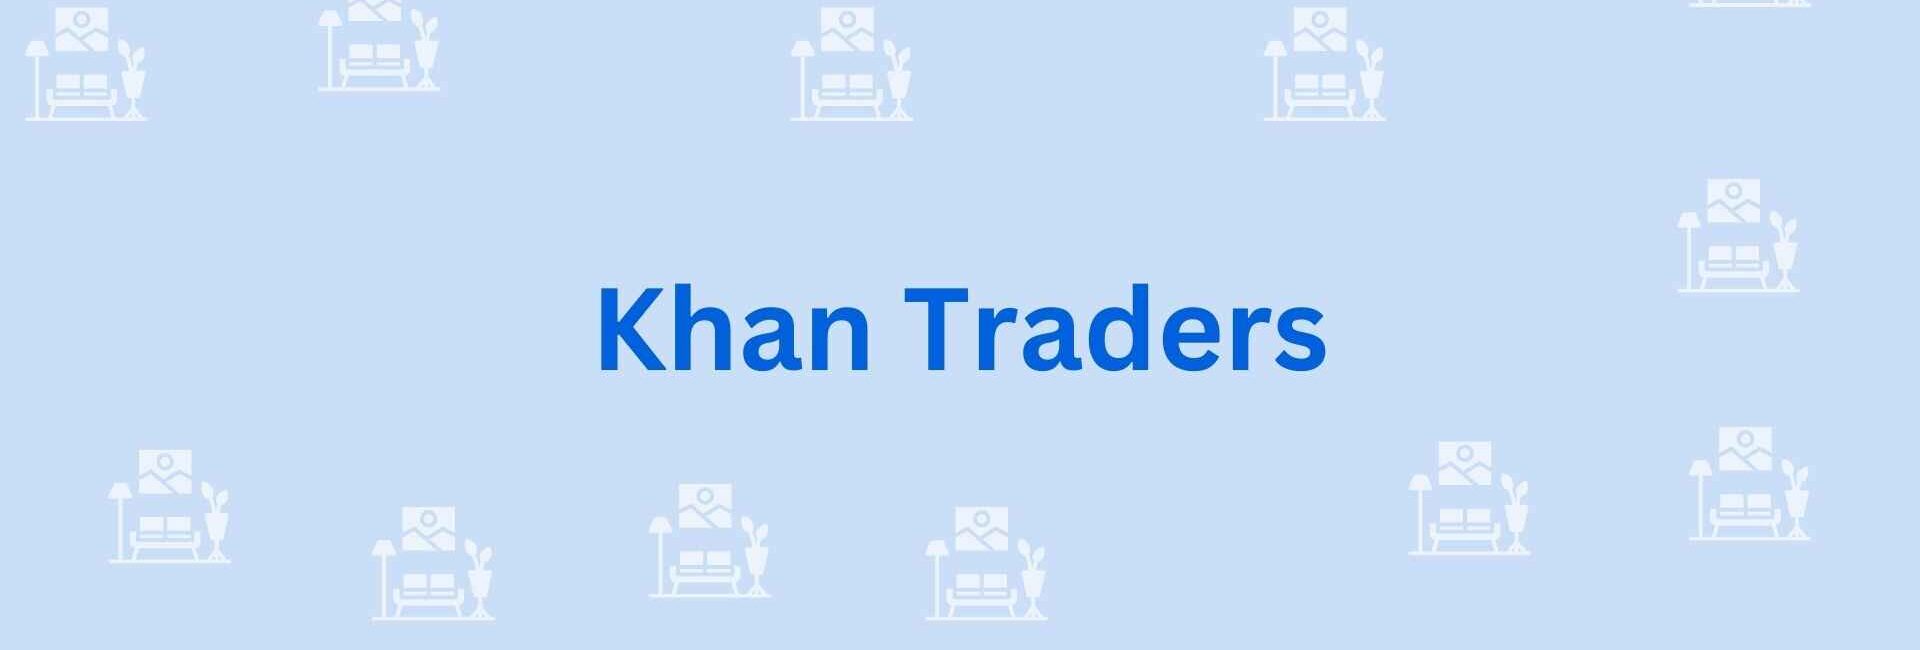 Khan Traders - Furniture Dealer in Noida